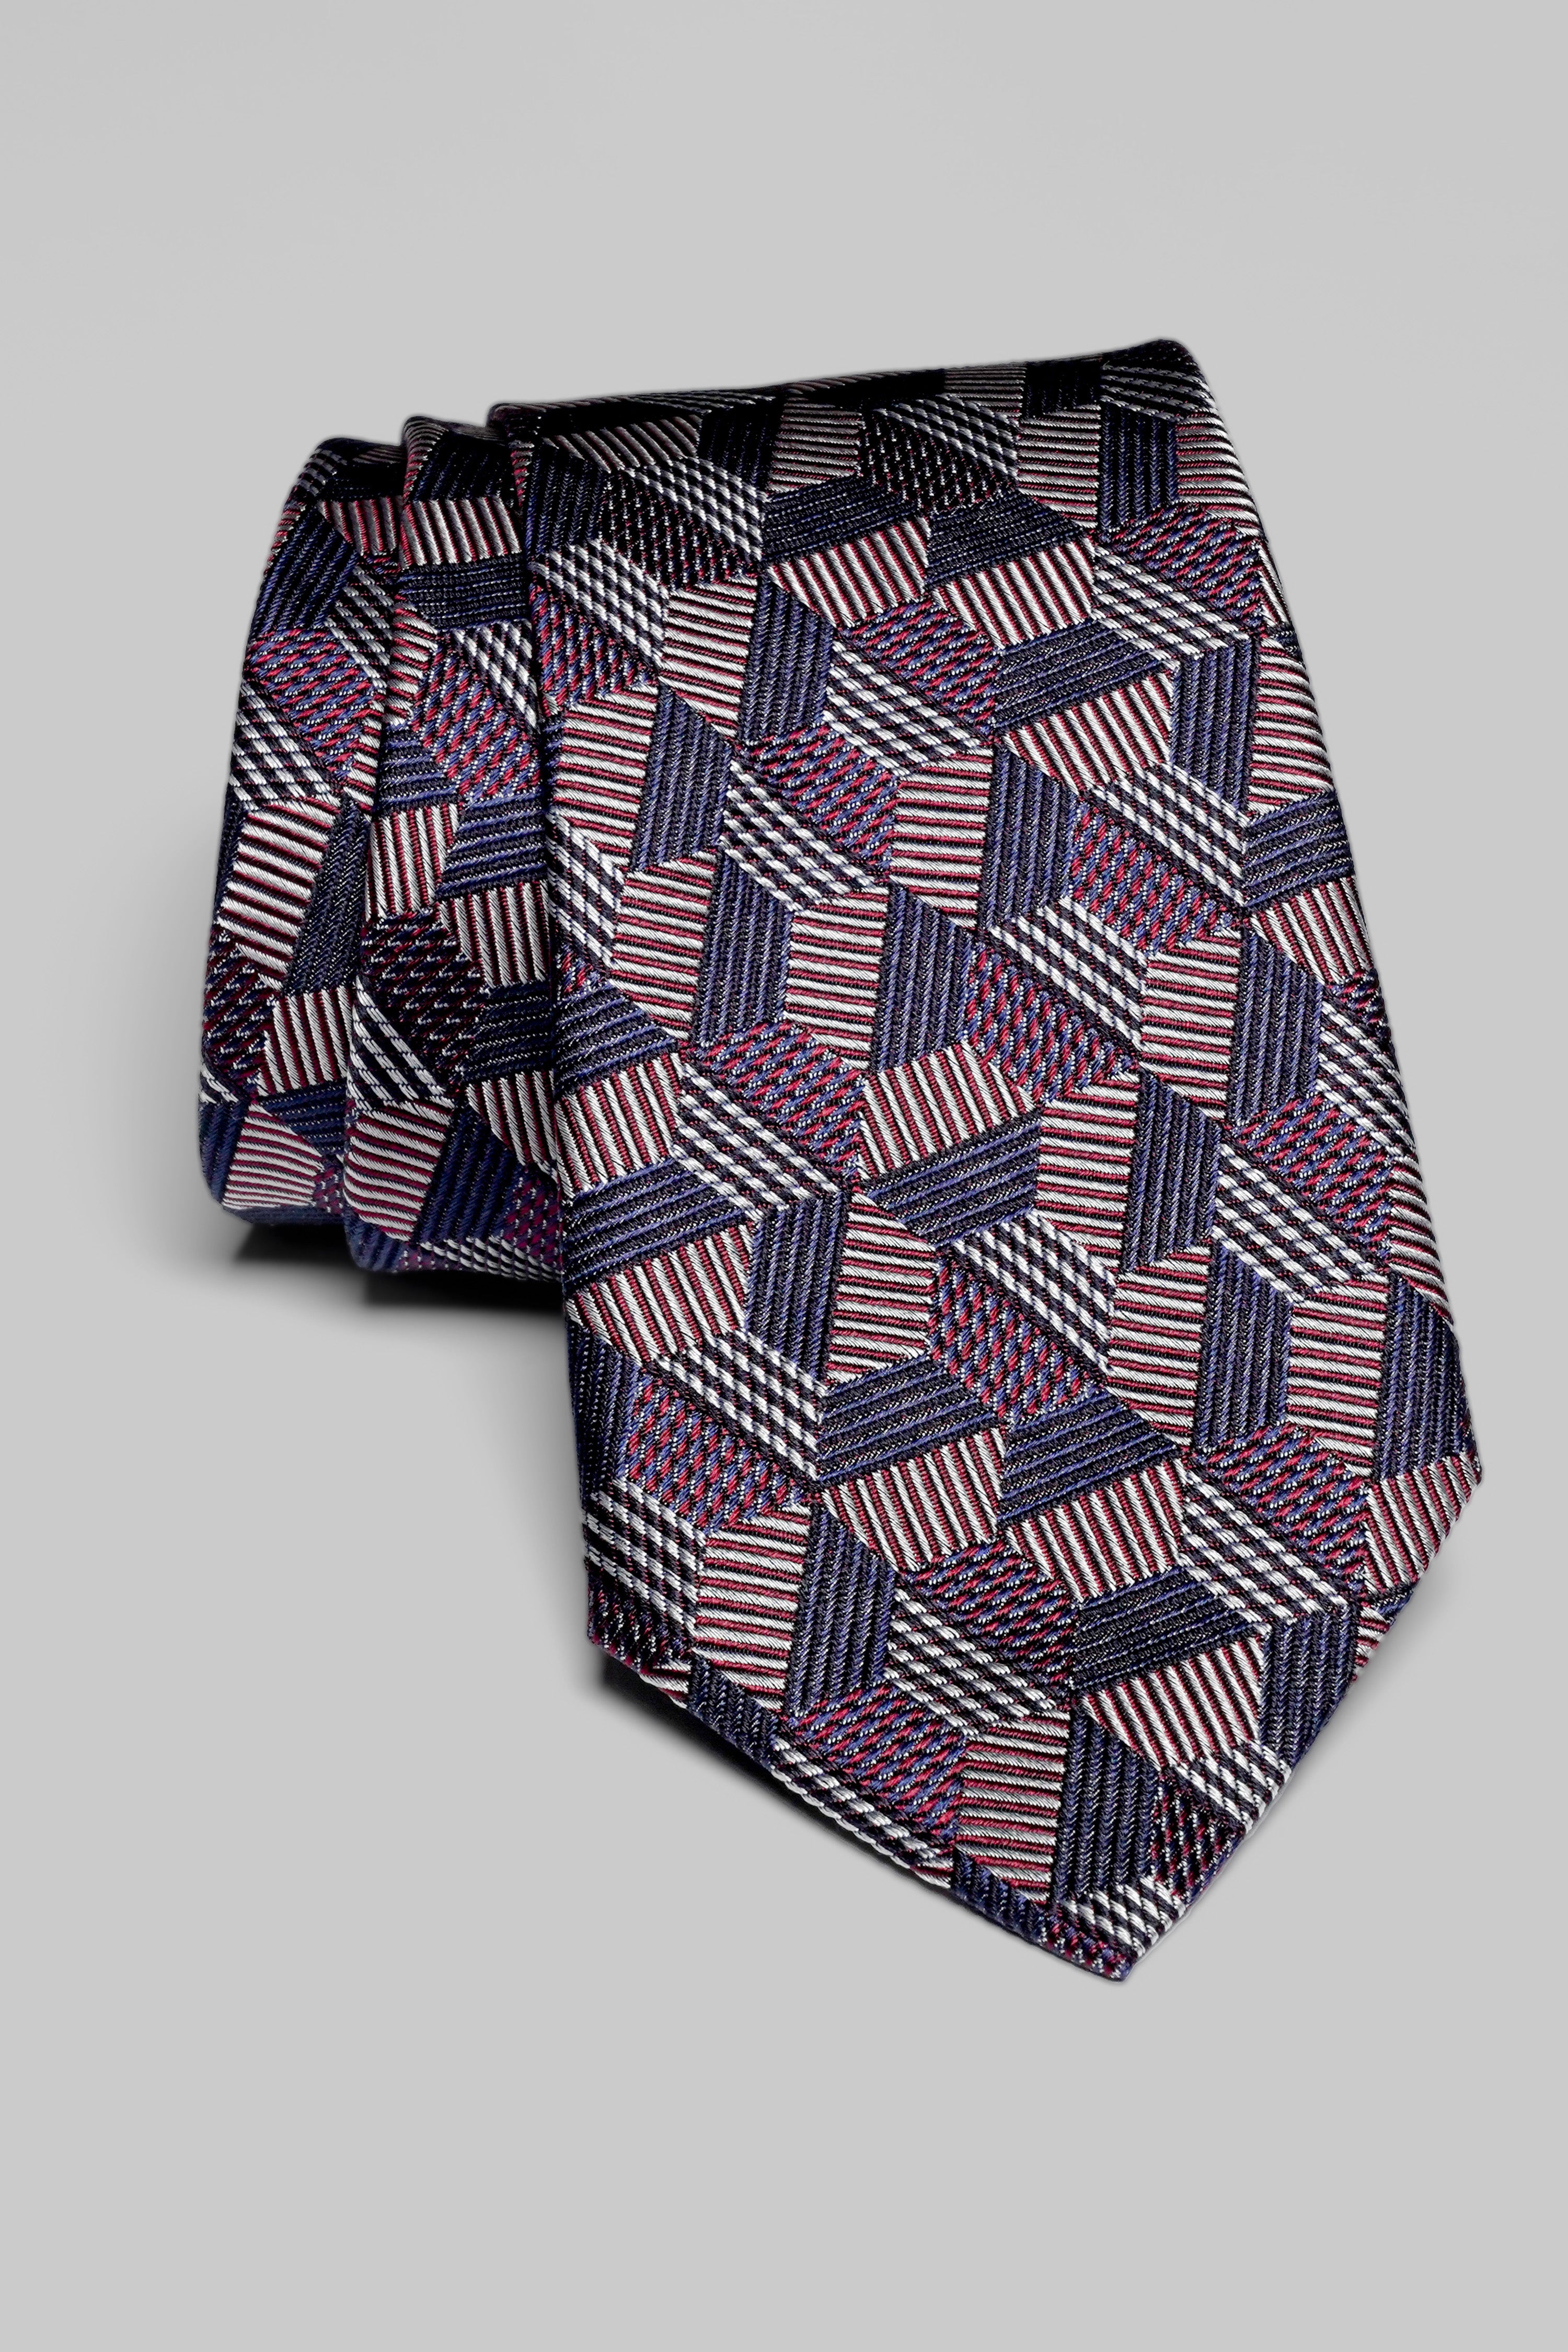 Vue alternative Holton cravate tissée en violet